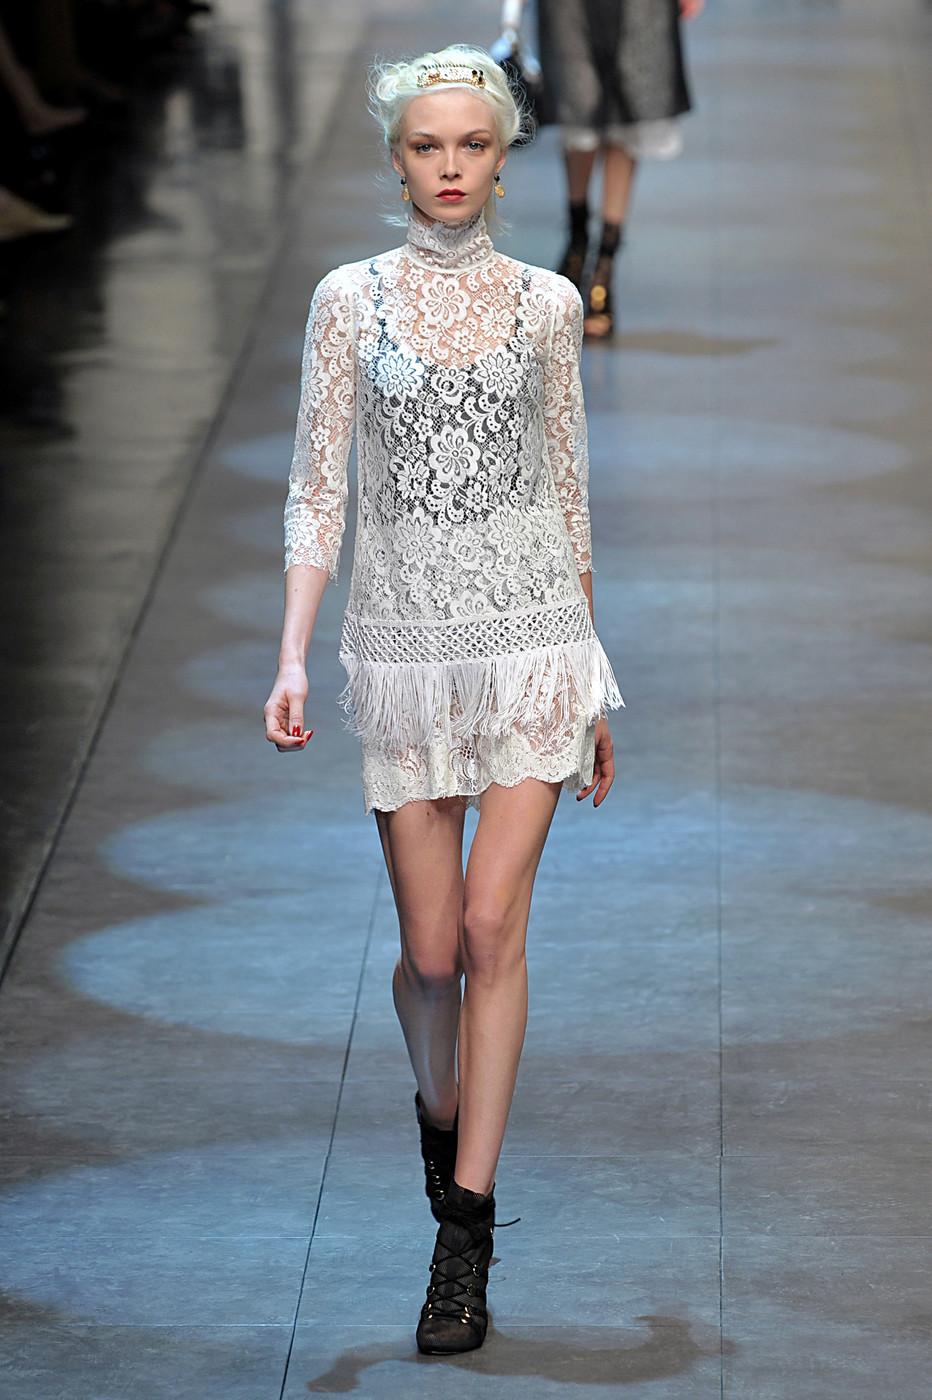 Le top en dentelle à franges Runway Dolce & Gabbana SS 2010 est une pièce magnifique et élégante. Il se compose d'un tissu en dentelle délicate avec un motif floral et des franges qui ajoutent une touche ludique. Il s'agit d'une taille 42IT ou M, et